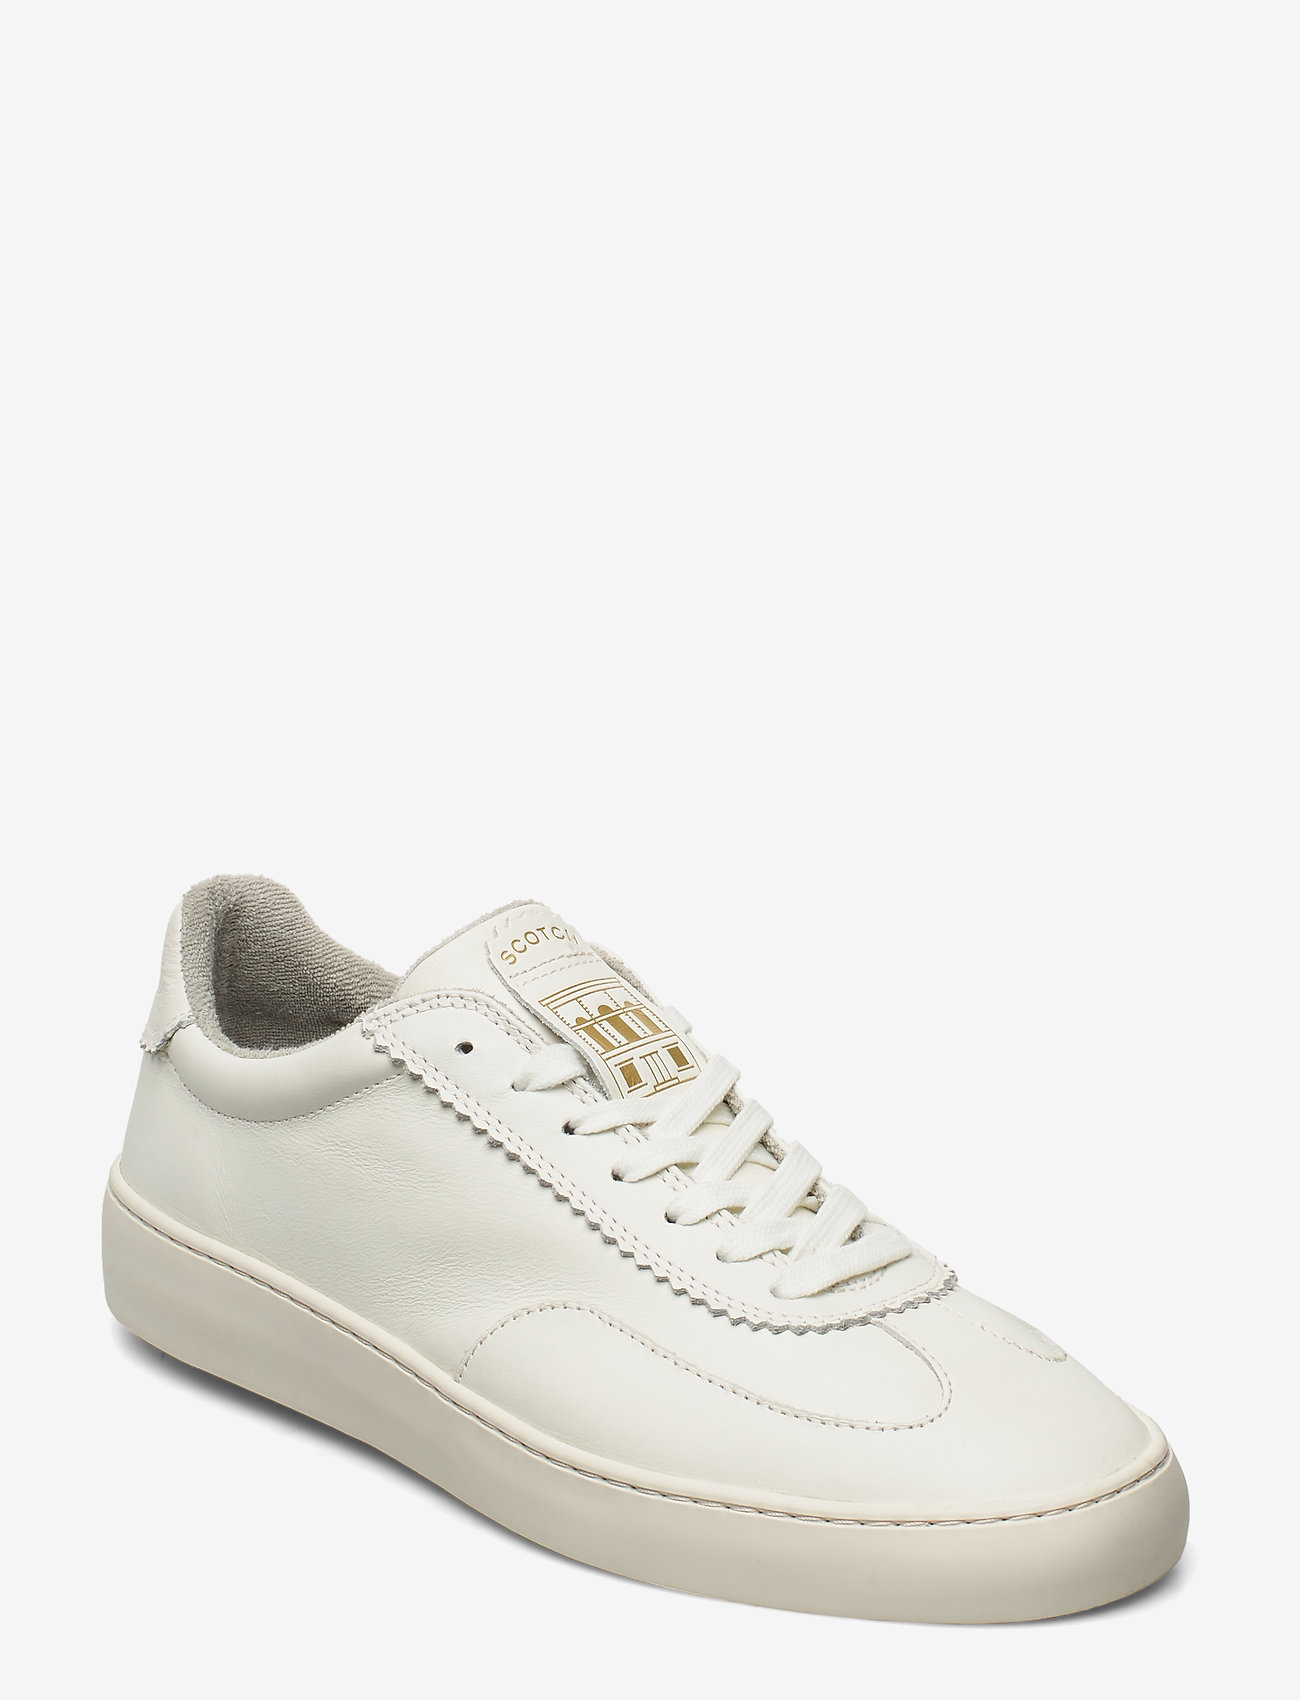 Plakka Sneaker (Off White) (64.98 